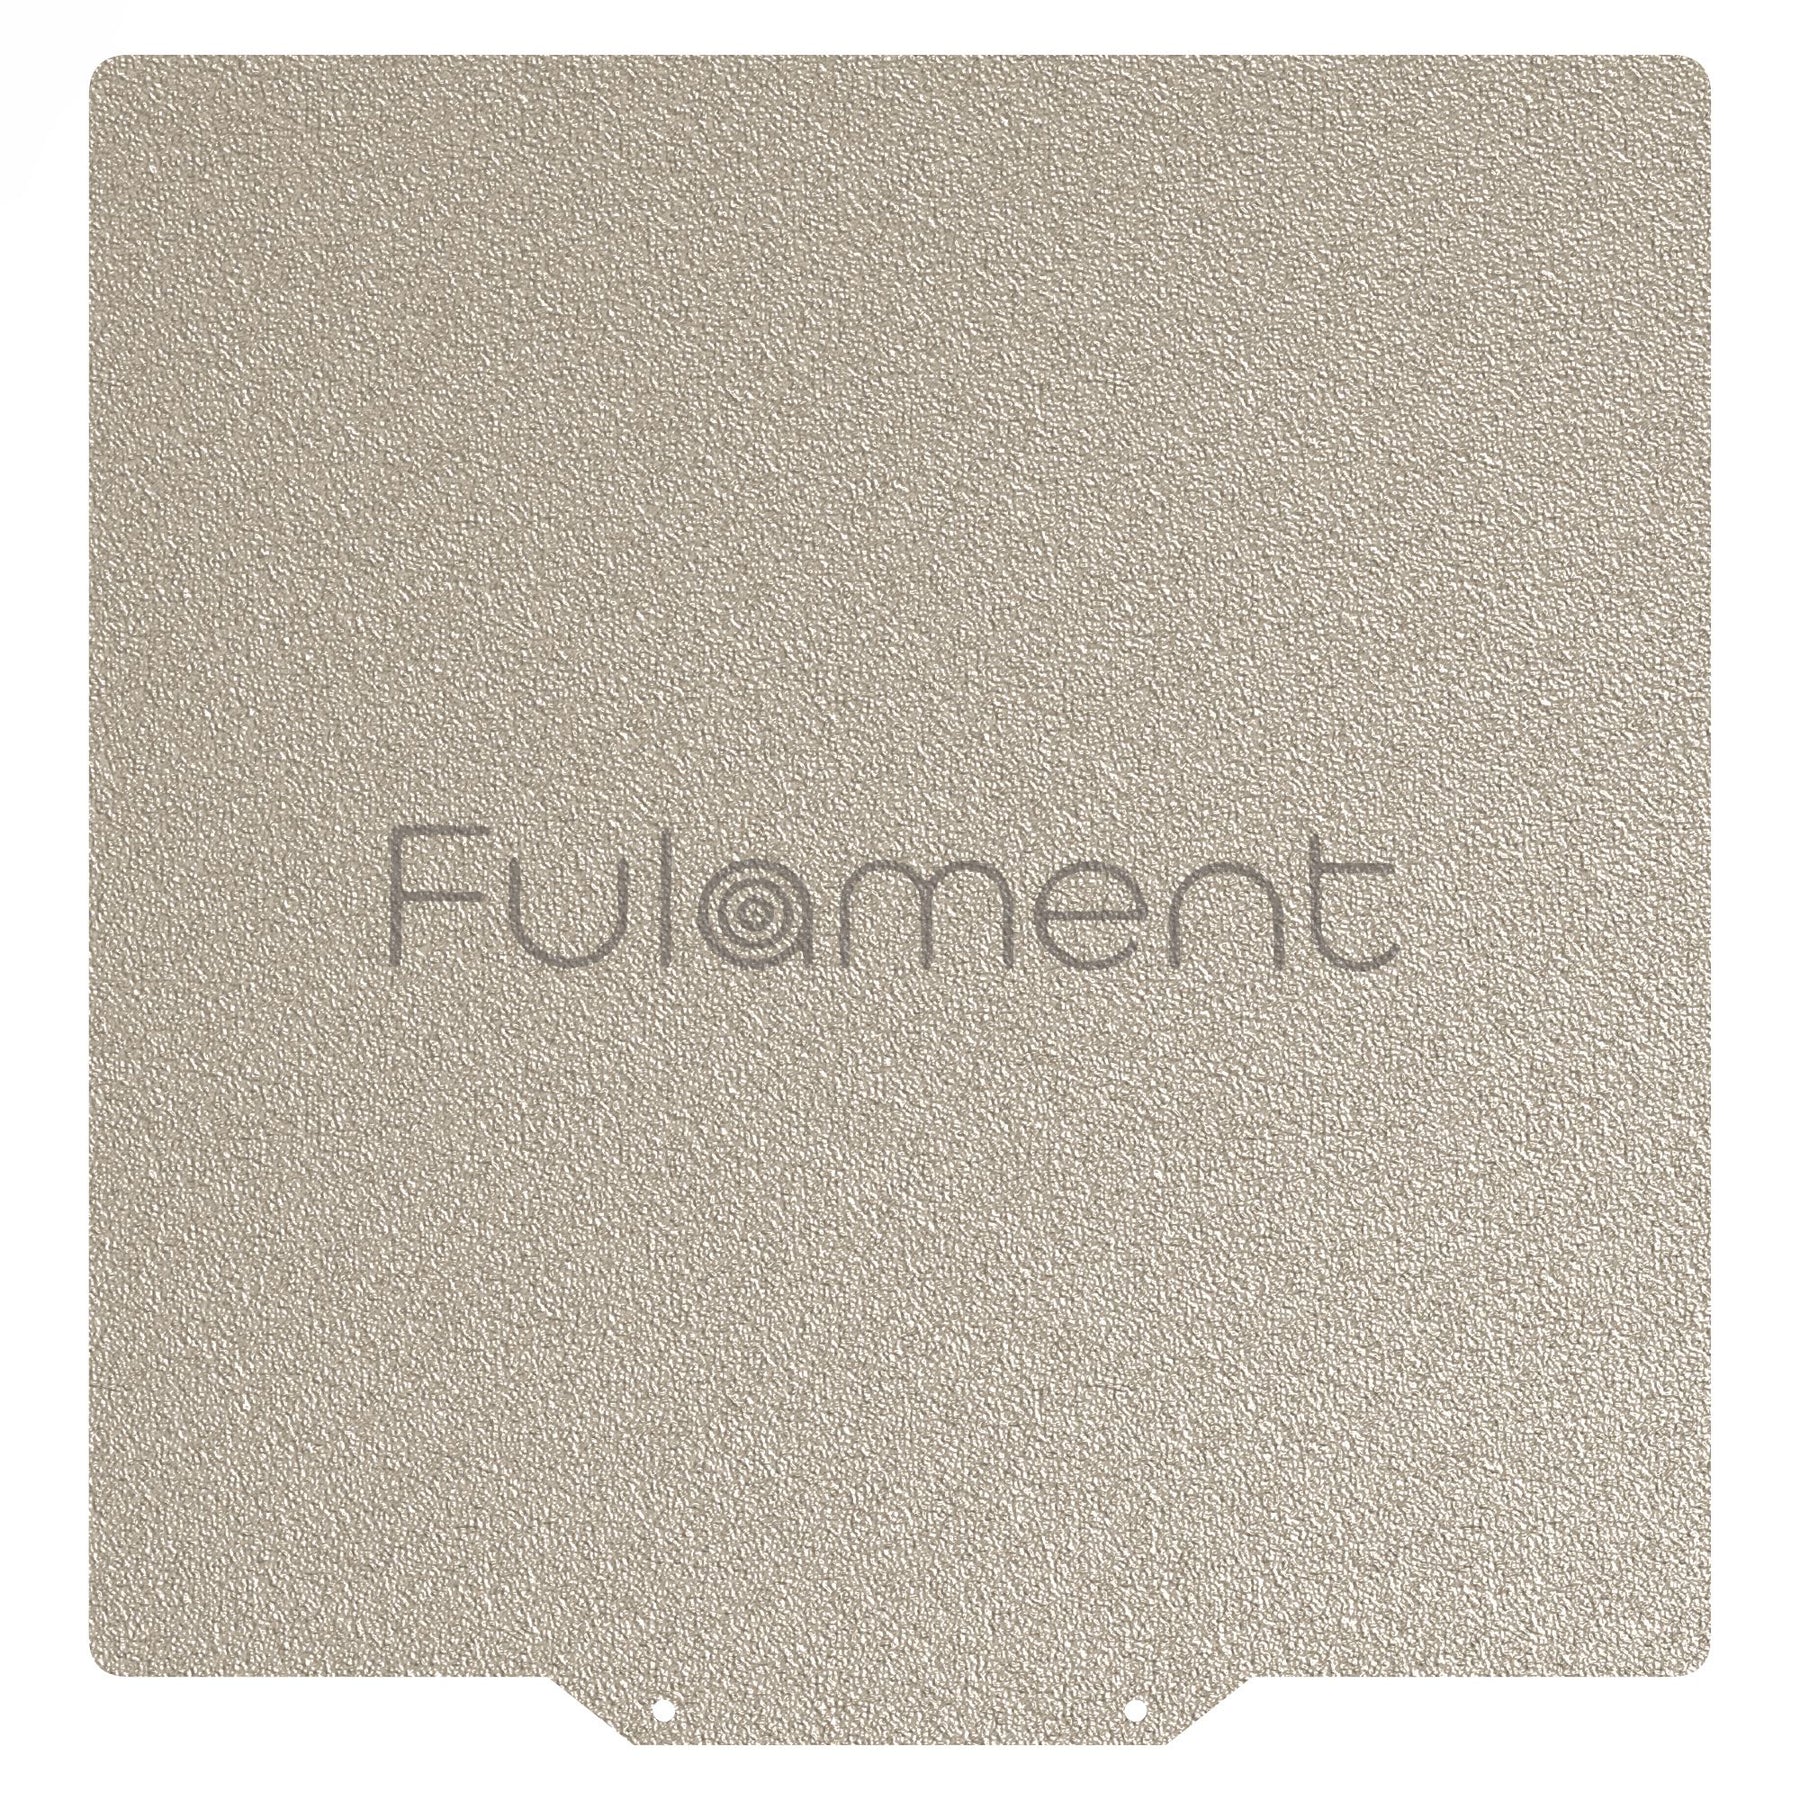 gCreate Fula-Flex 2.0 Fulament